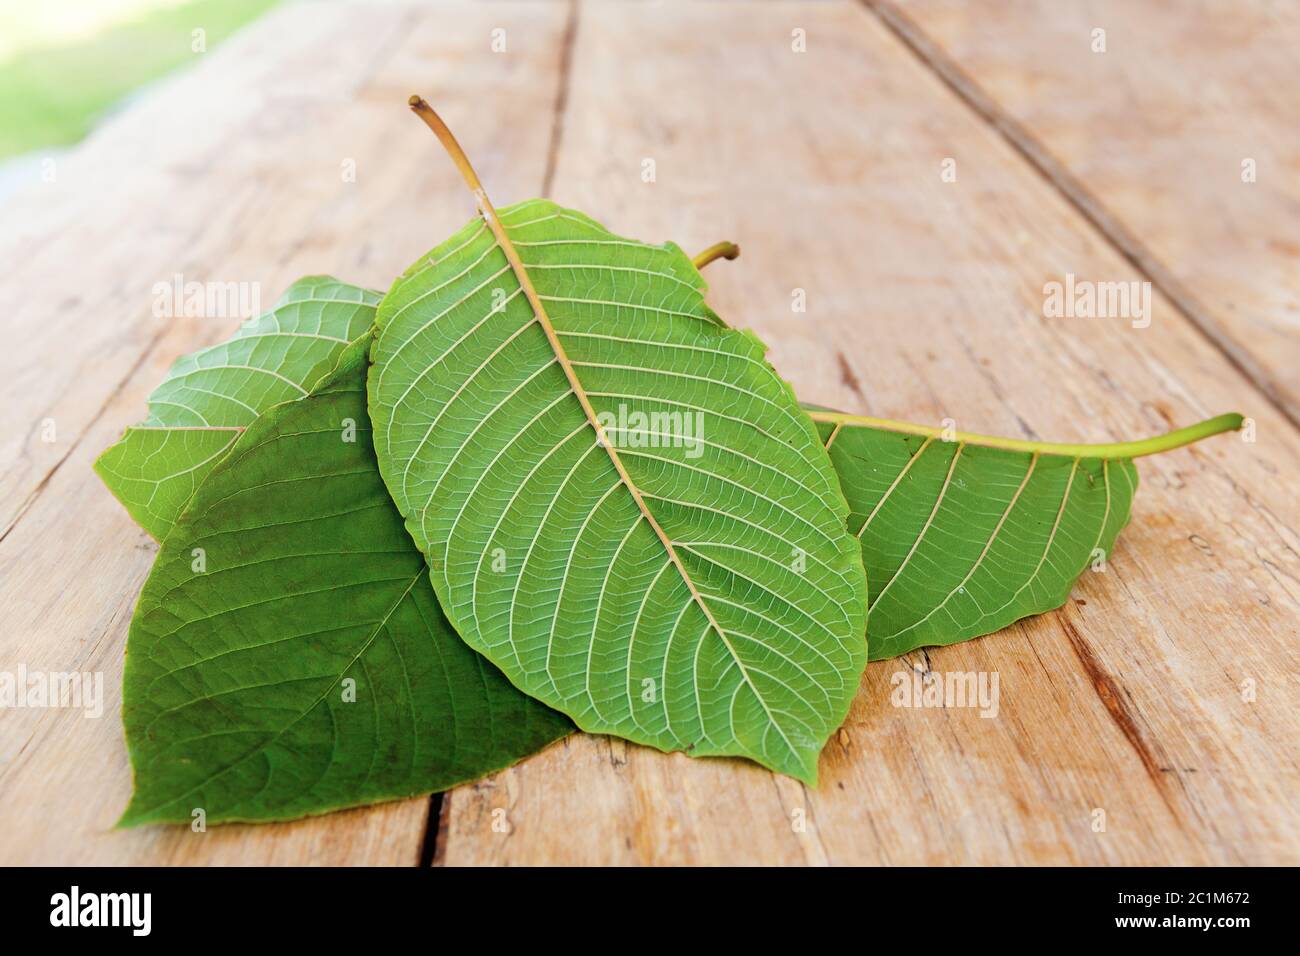 Mitragyna speciosa leaves Stock Photo